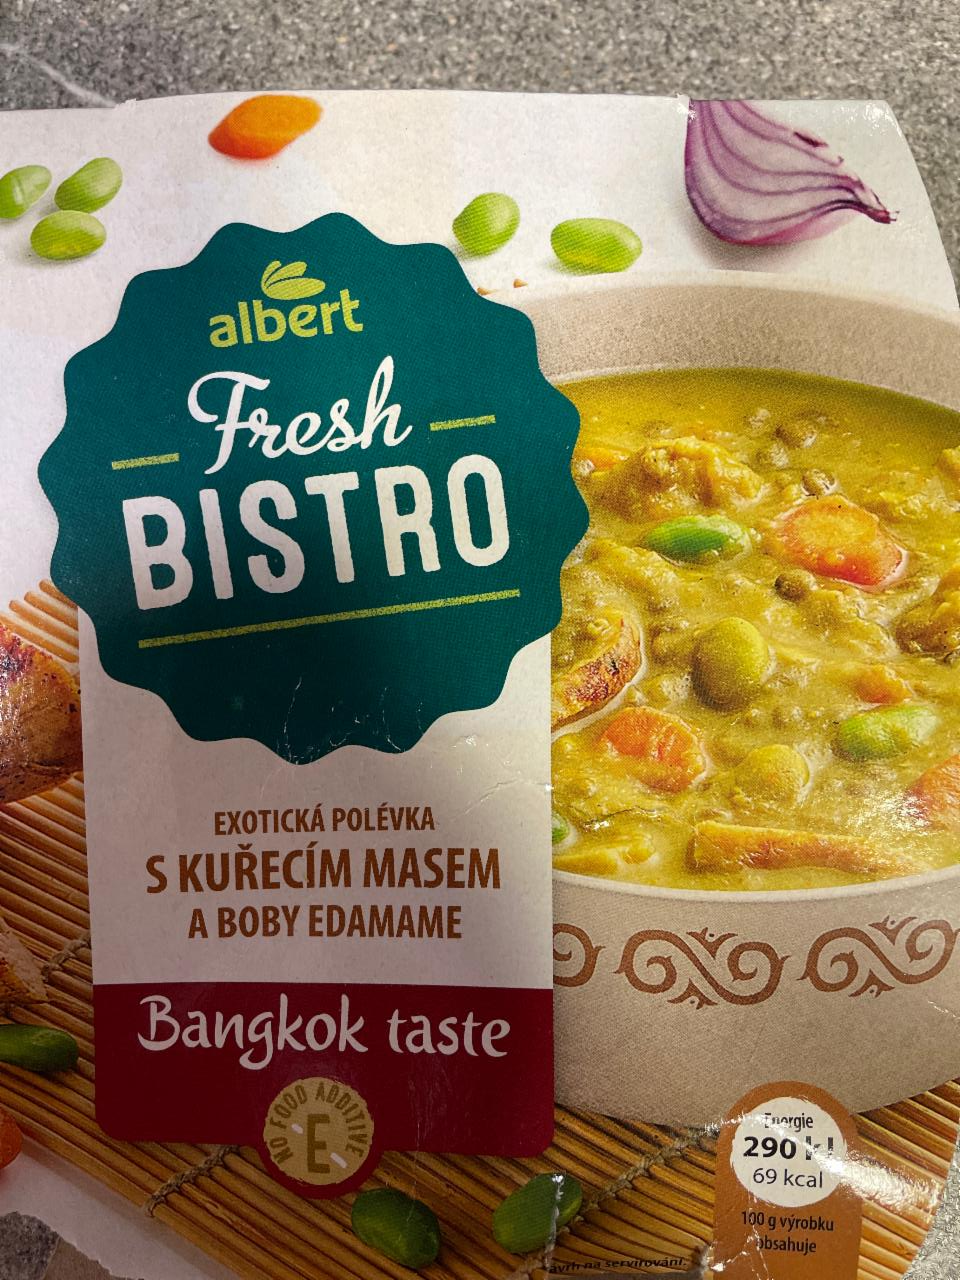 Фото - Exotická polévka s kuřecím masem a boby edamame Bangkok taste Albert Fresh Bistro